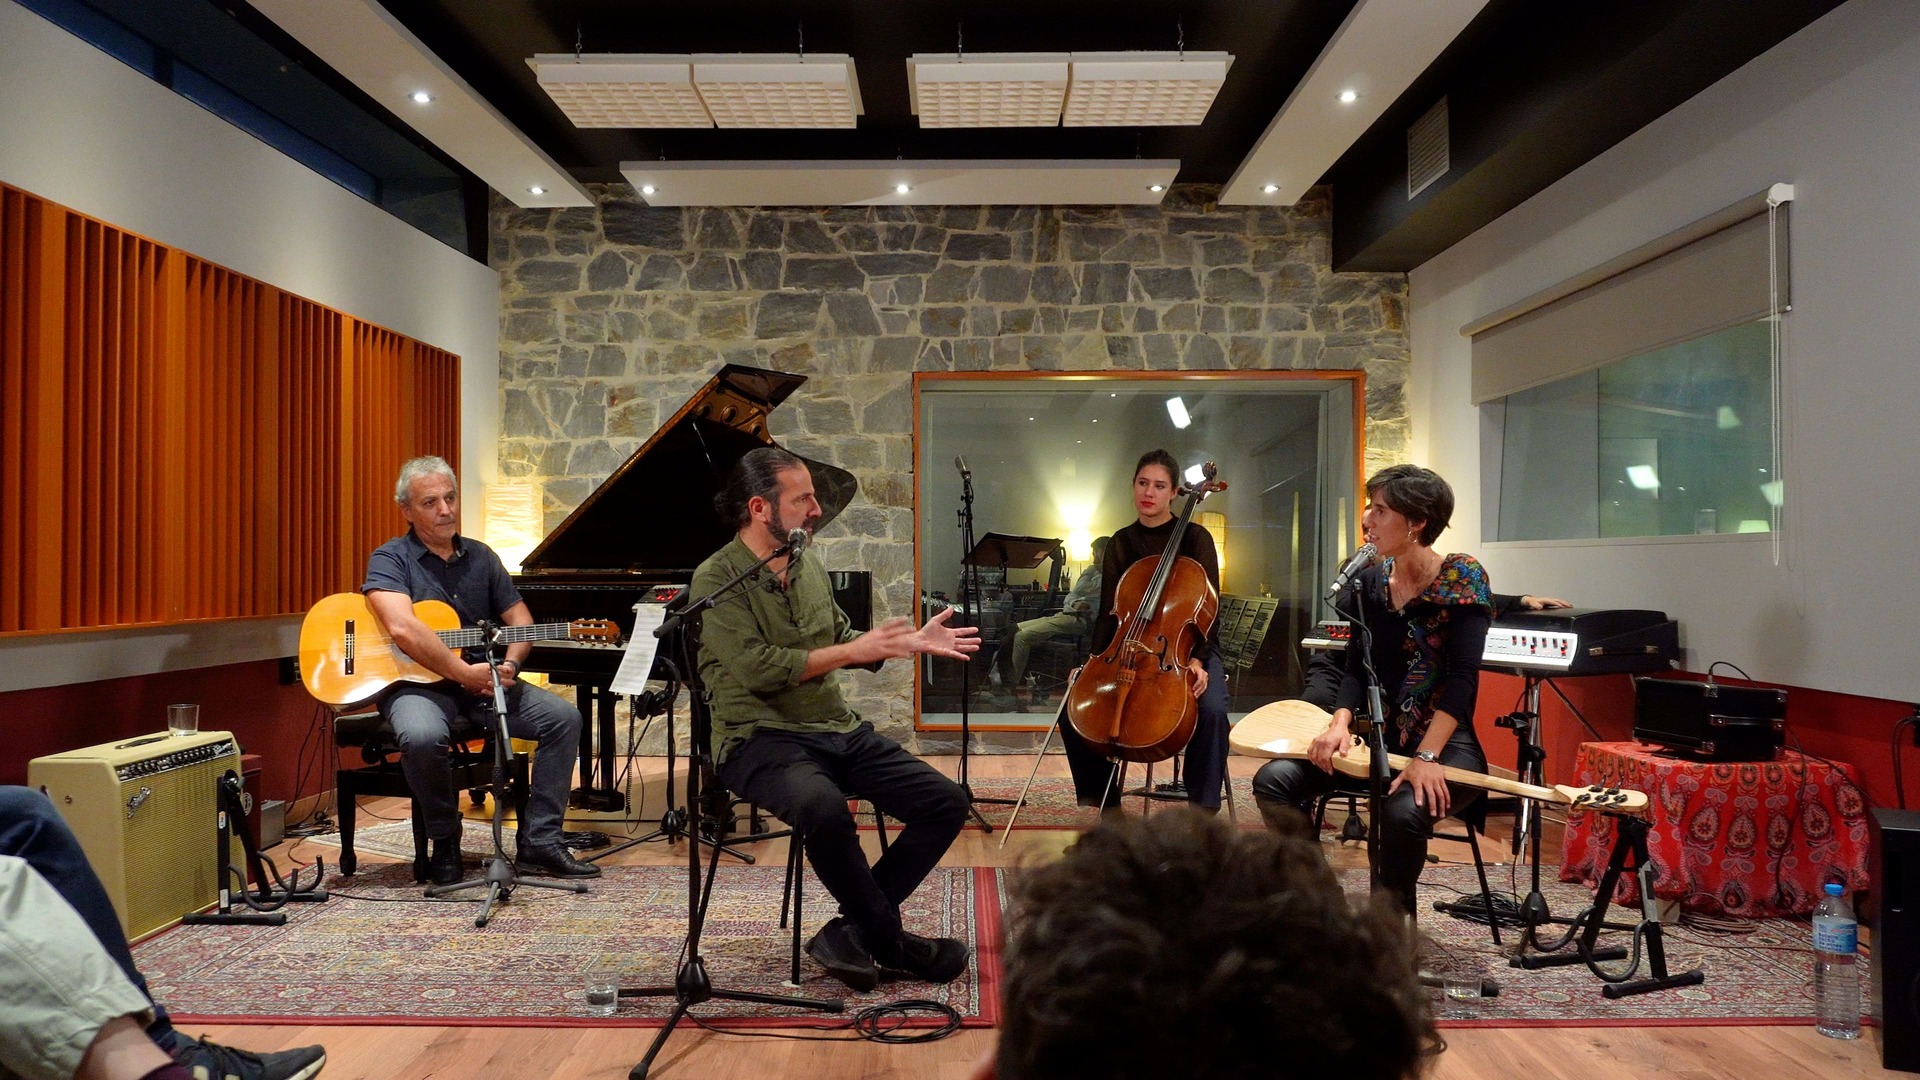 Equipo de Música por la Ciencia grabando en un estudio en Barcelona.